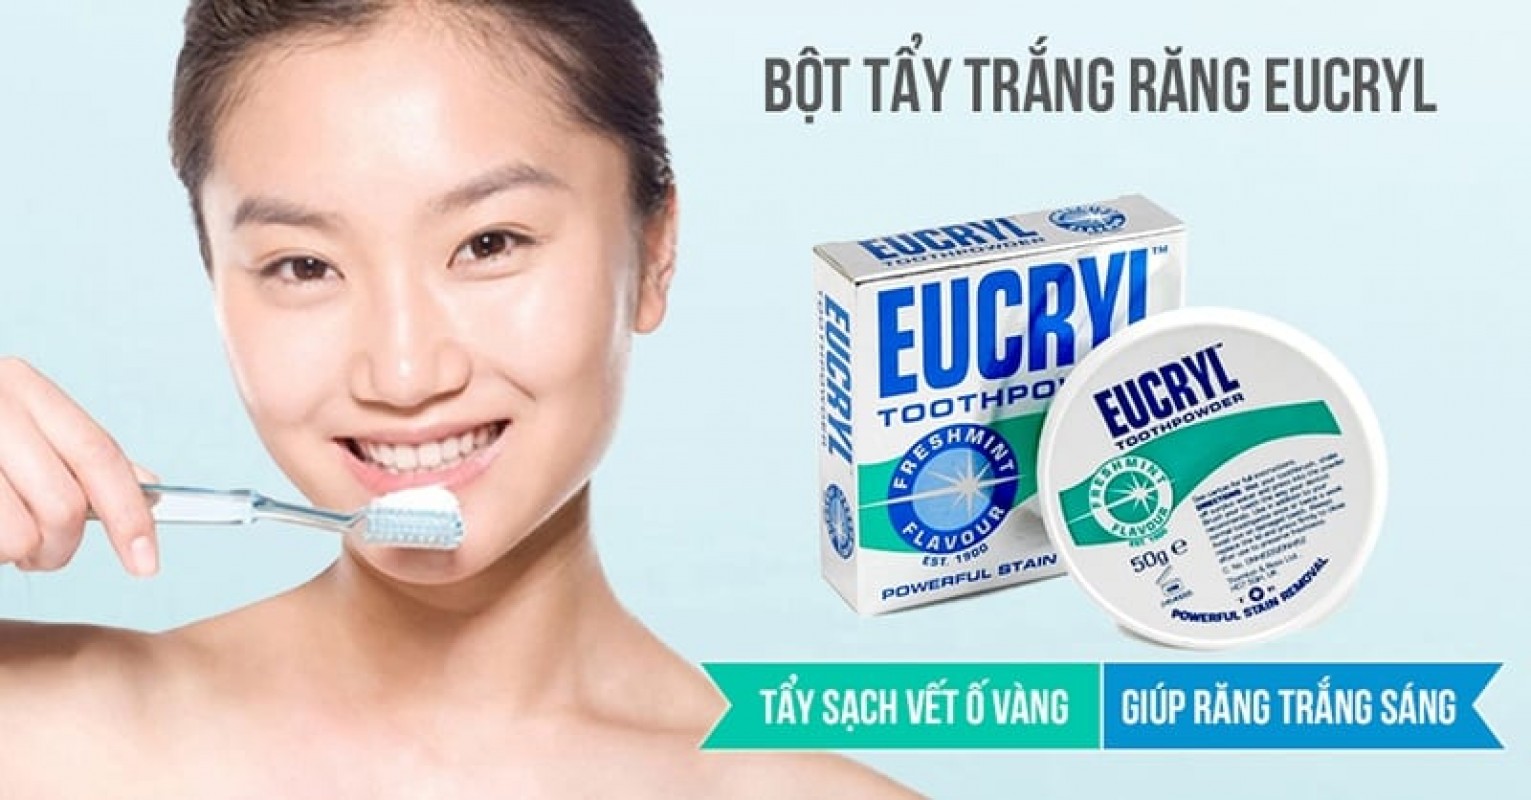 Yukril răng tẩy trắng bột được không, nơi để bán